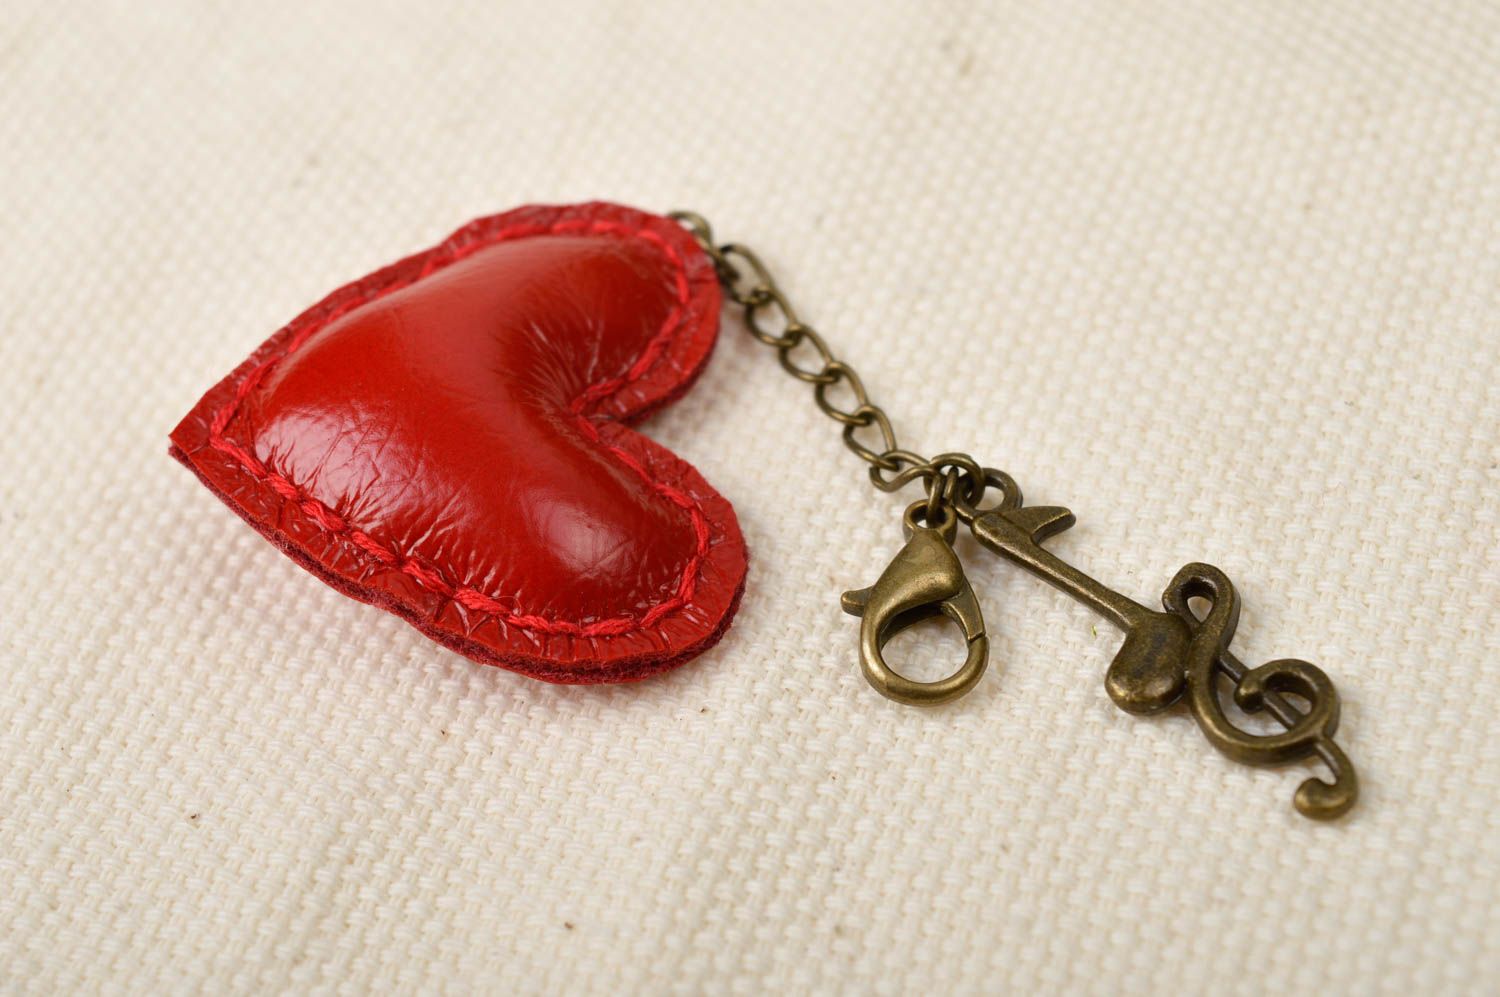 Брелок ручной работы кожаный брелок красный сердечко брелок на сумку для девушки фото 1